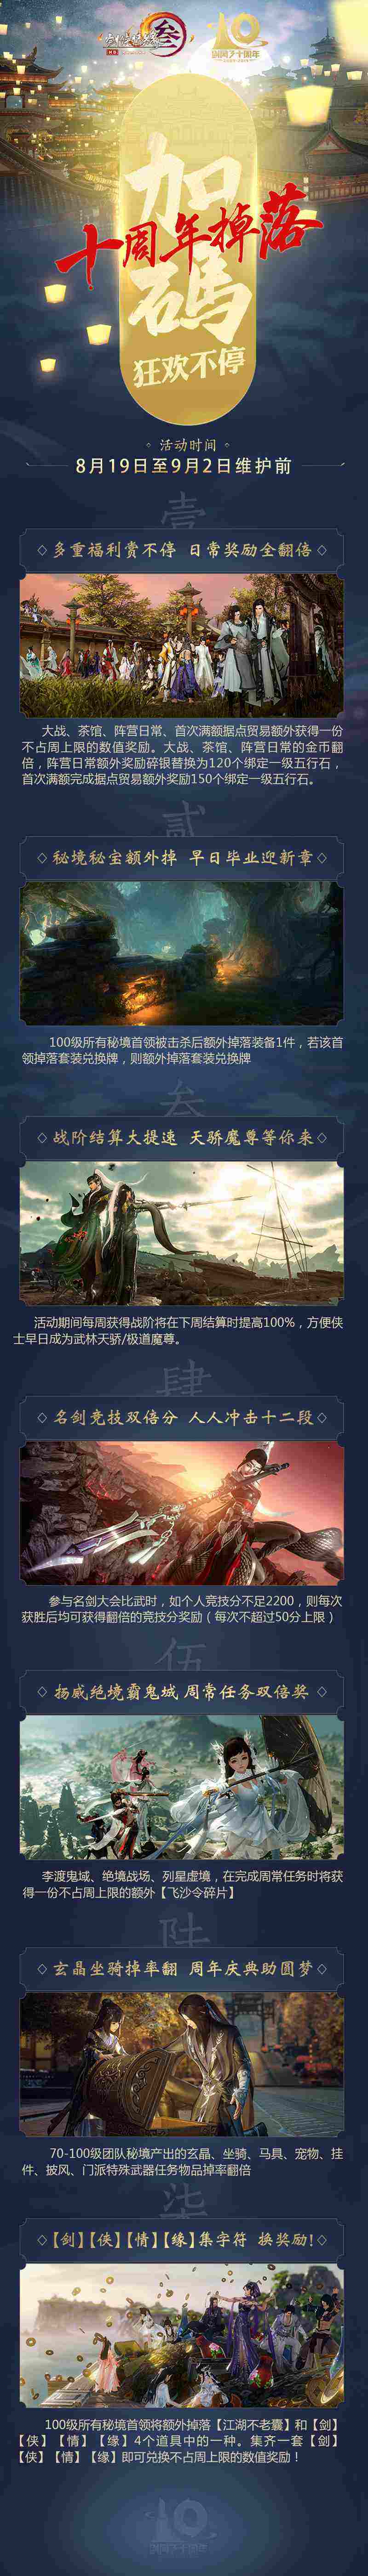 《剑网3》十周年活动第二弹19日上线  玩家纪录片攻略东京     